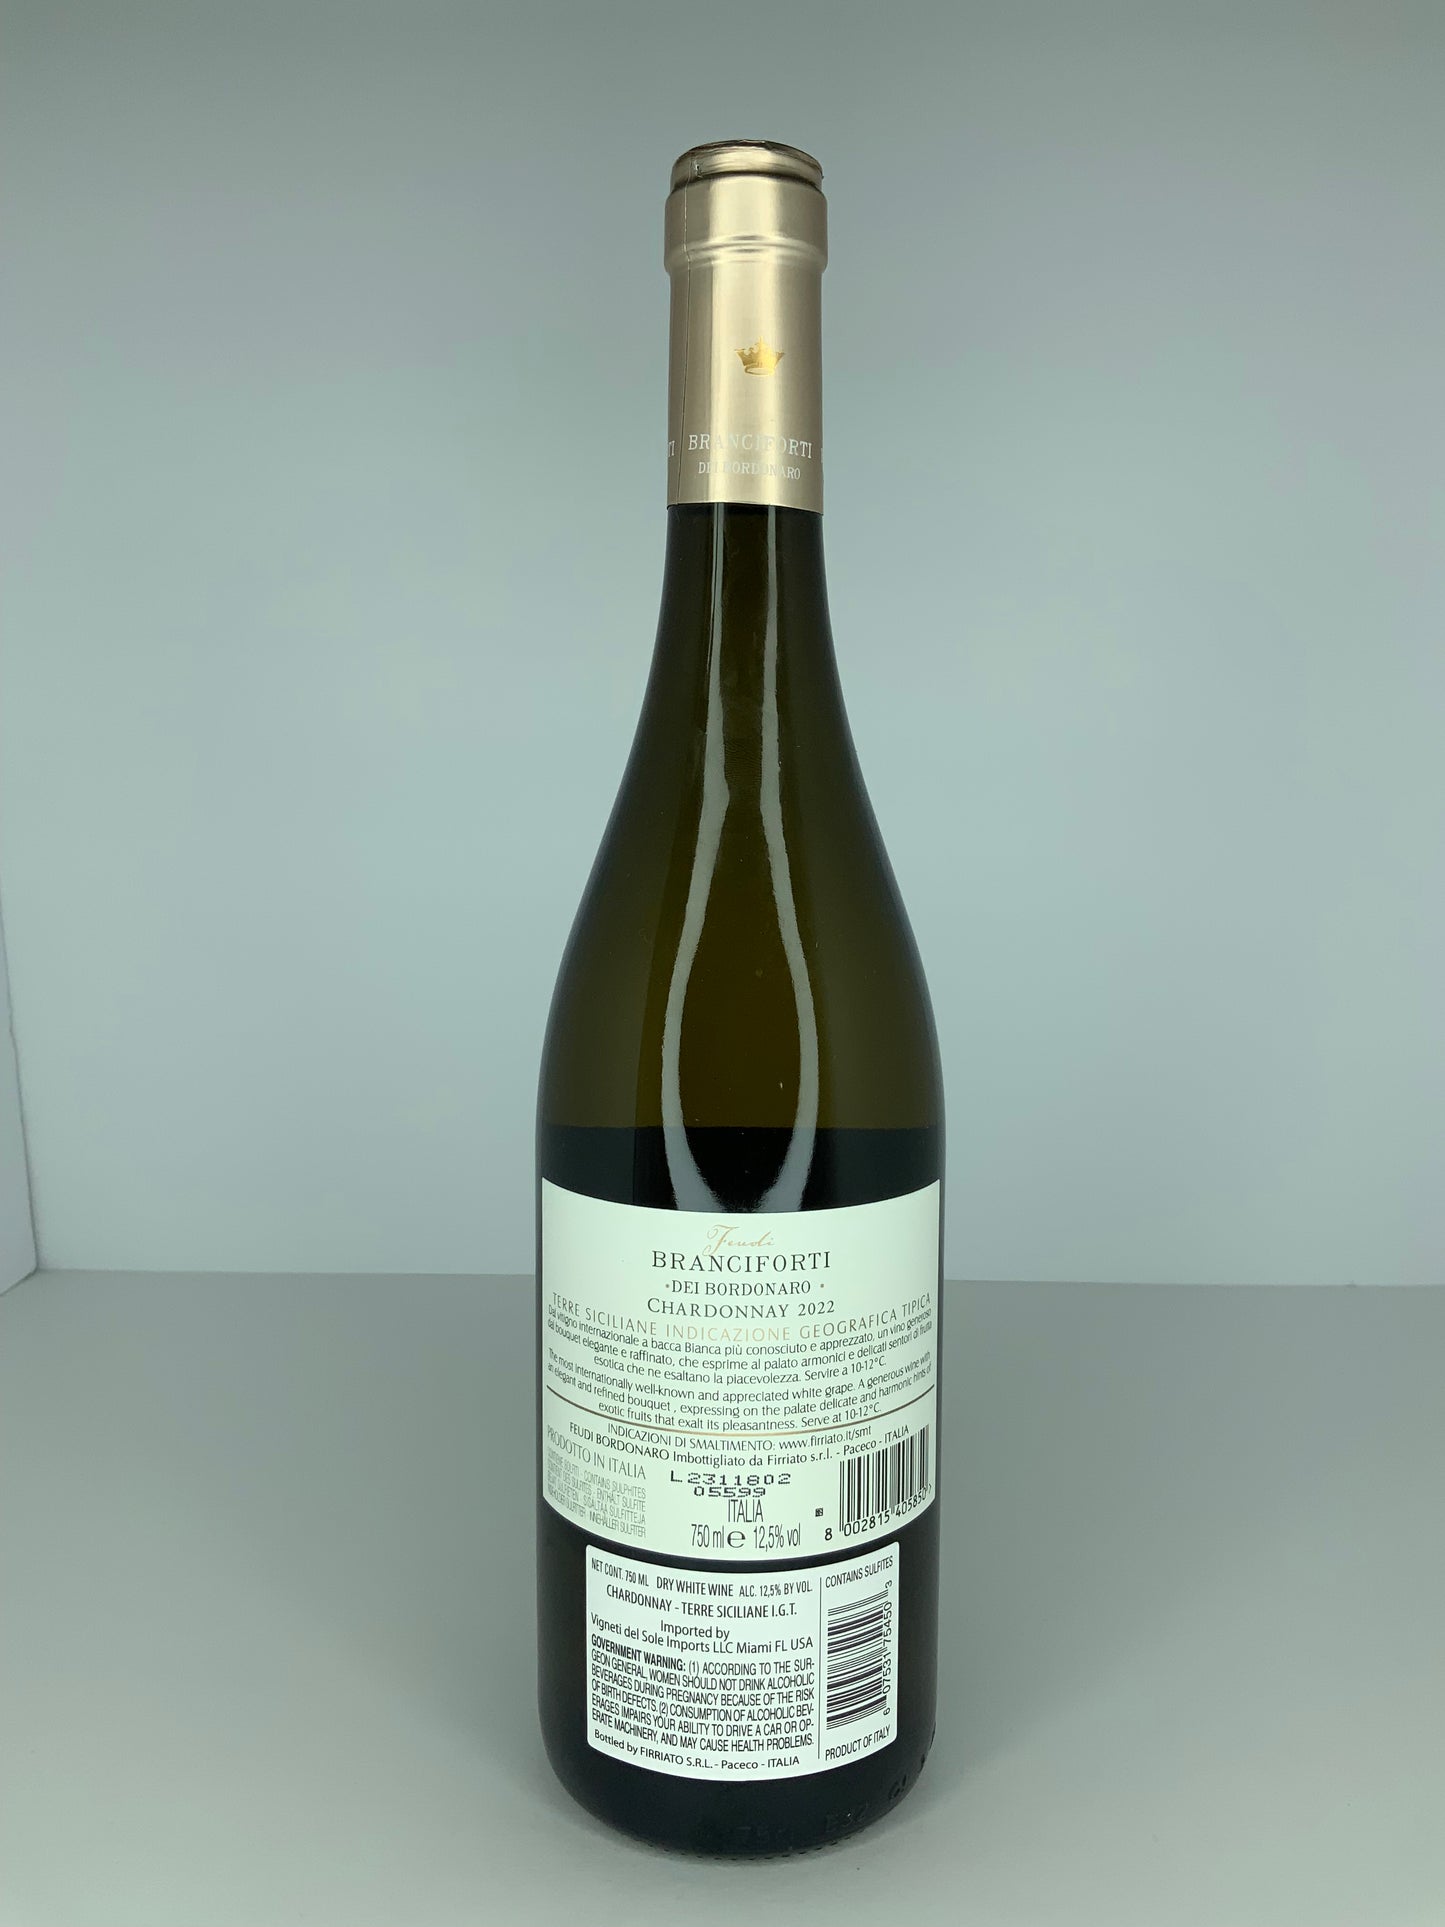 Branciforti dei Bordonaro Chardonnay 2022